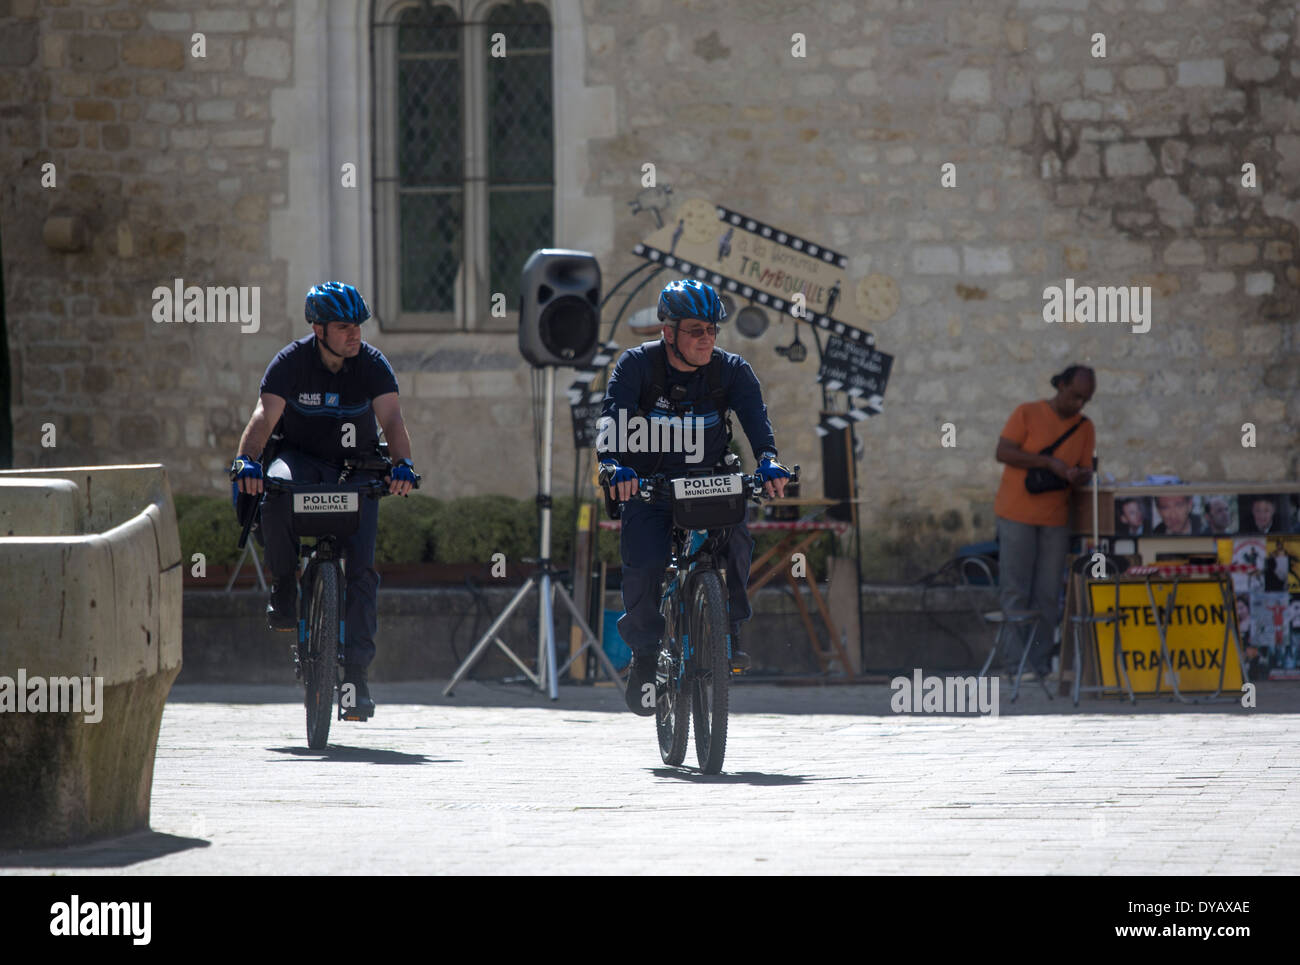 Zwei französische Gendarmen auf Patrouille Bikes Fahrräder Stockfoto